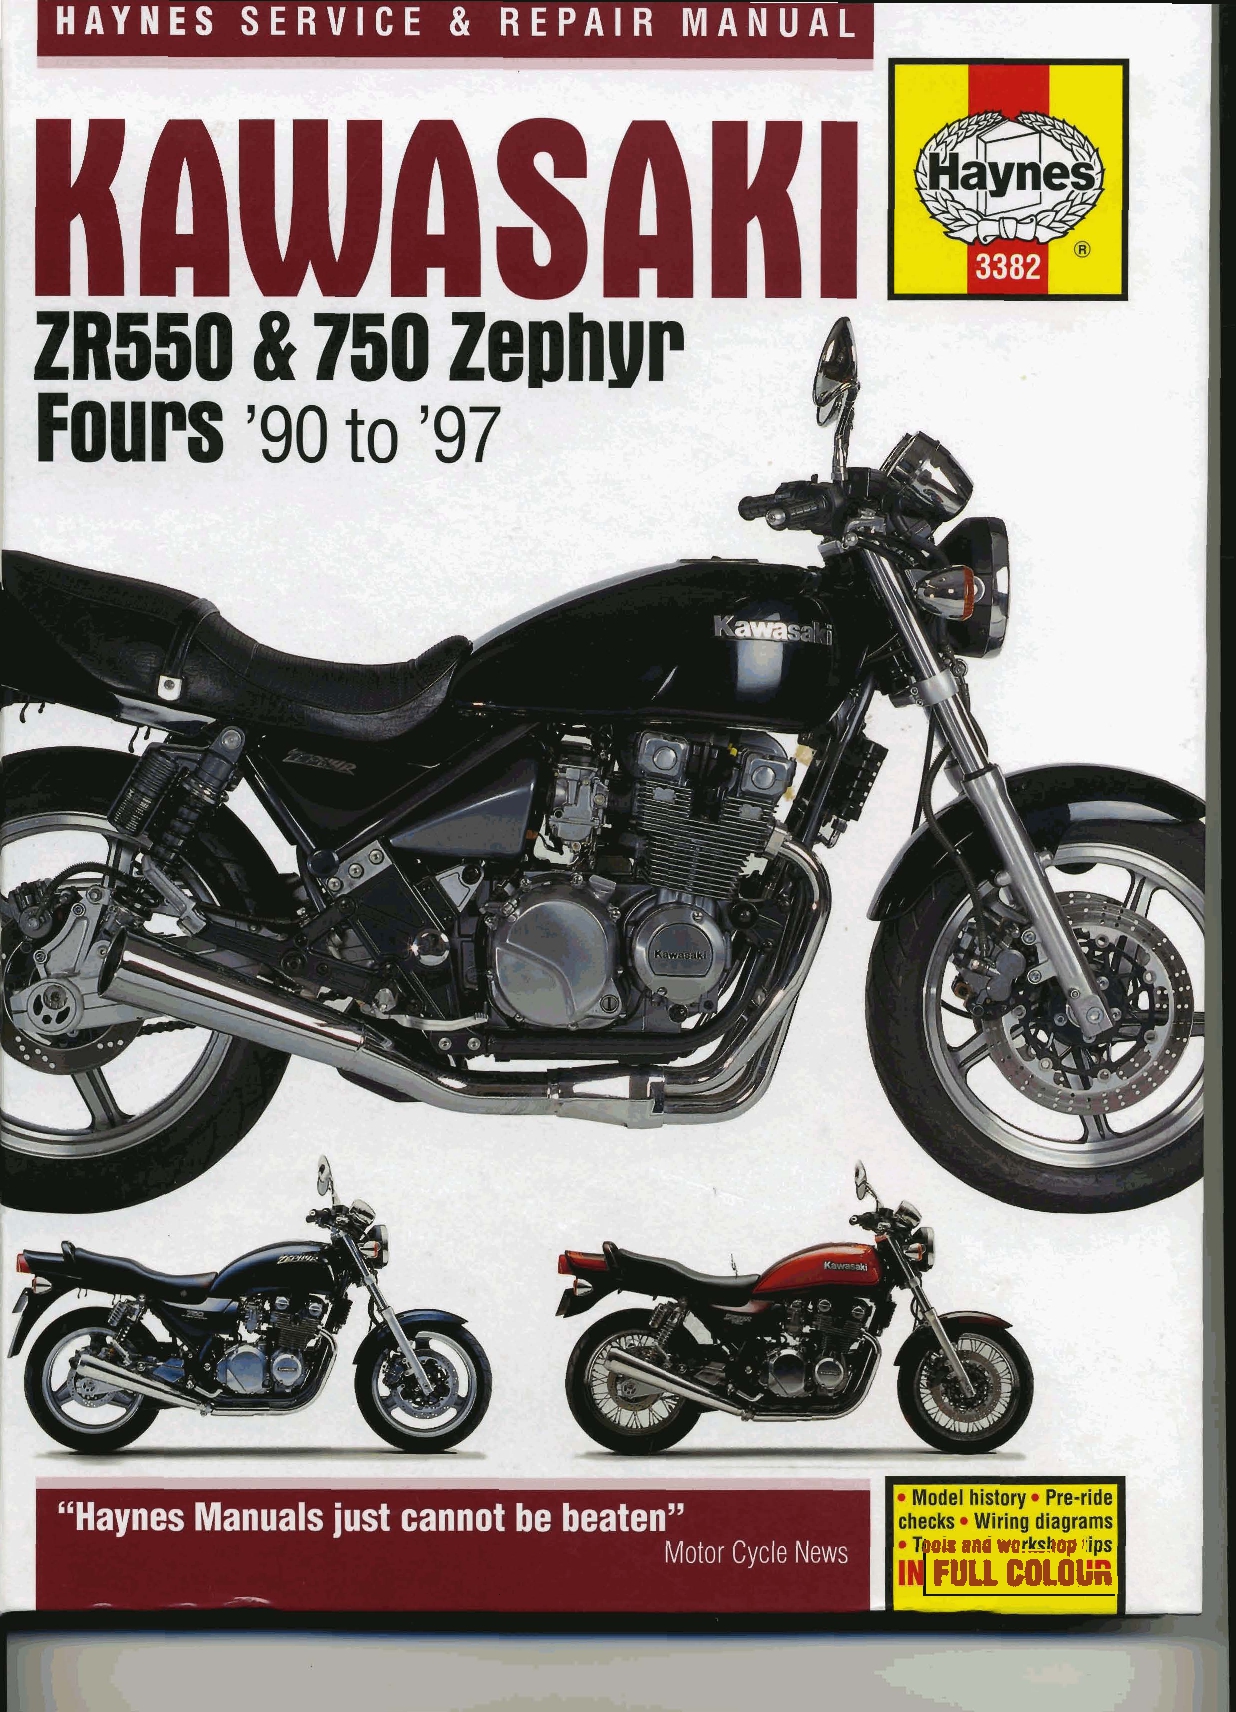 Kawasaki-Zephyr-550-Street-Tracker-6 - BikeBound